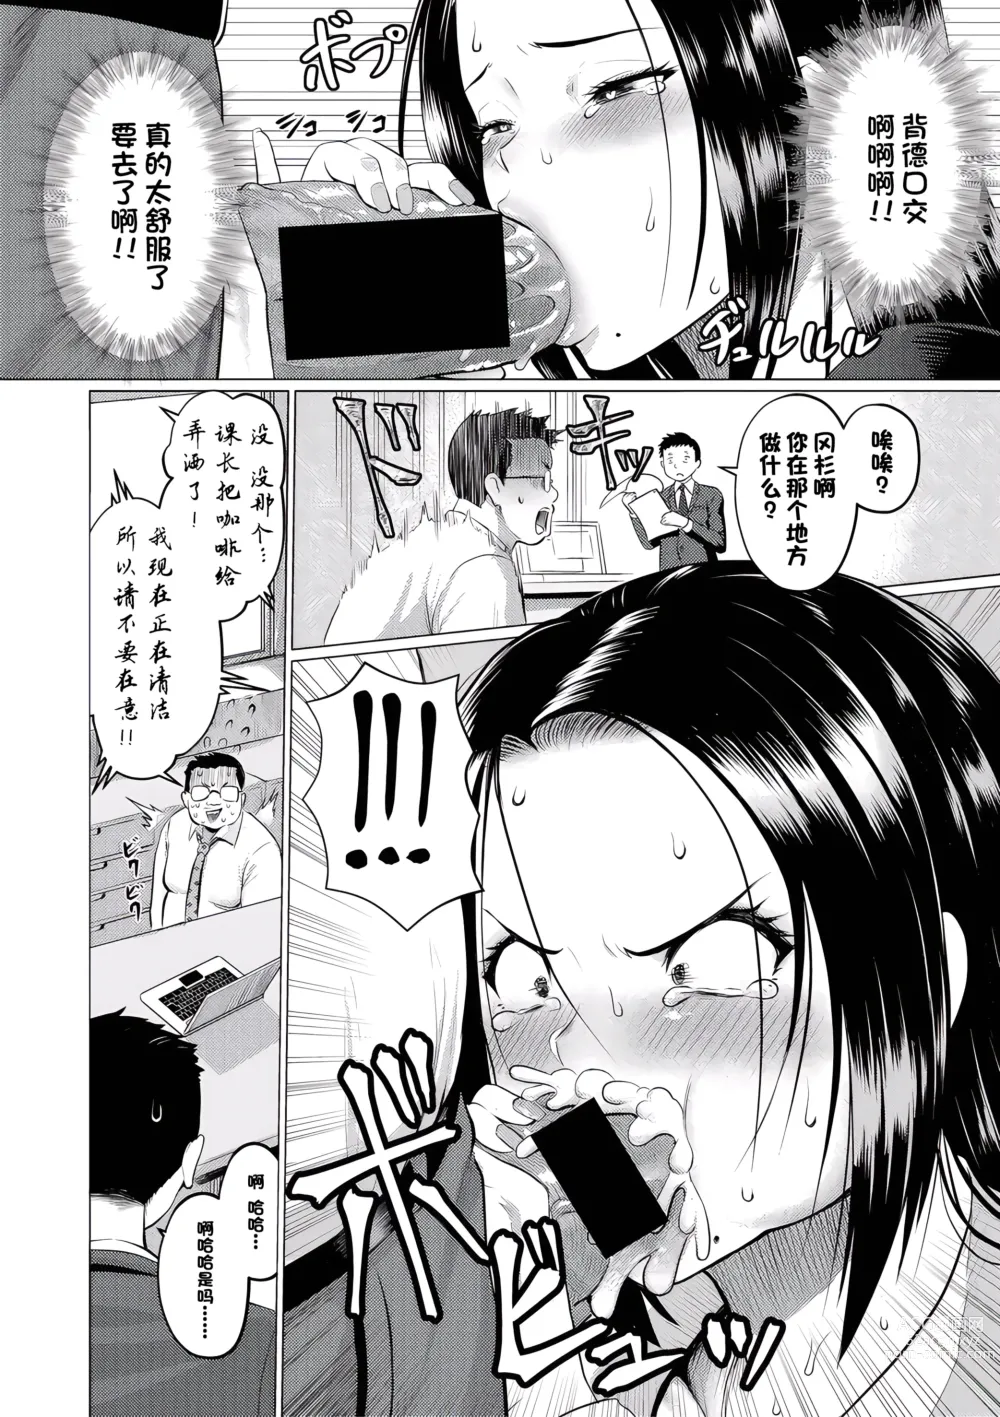 Page 9 of manga Horegusuri de Gyakushuu